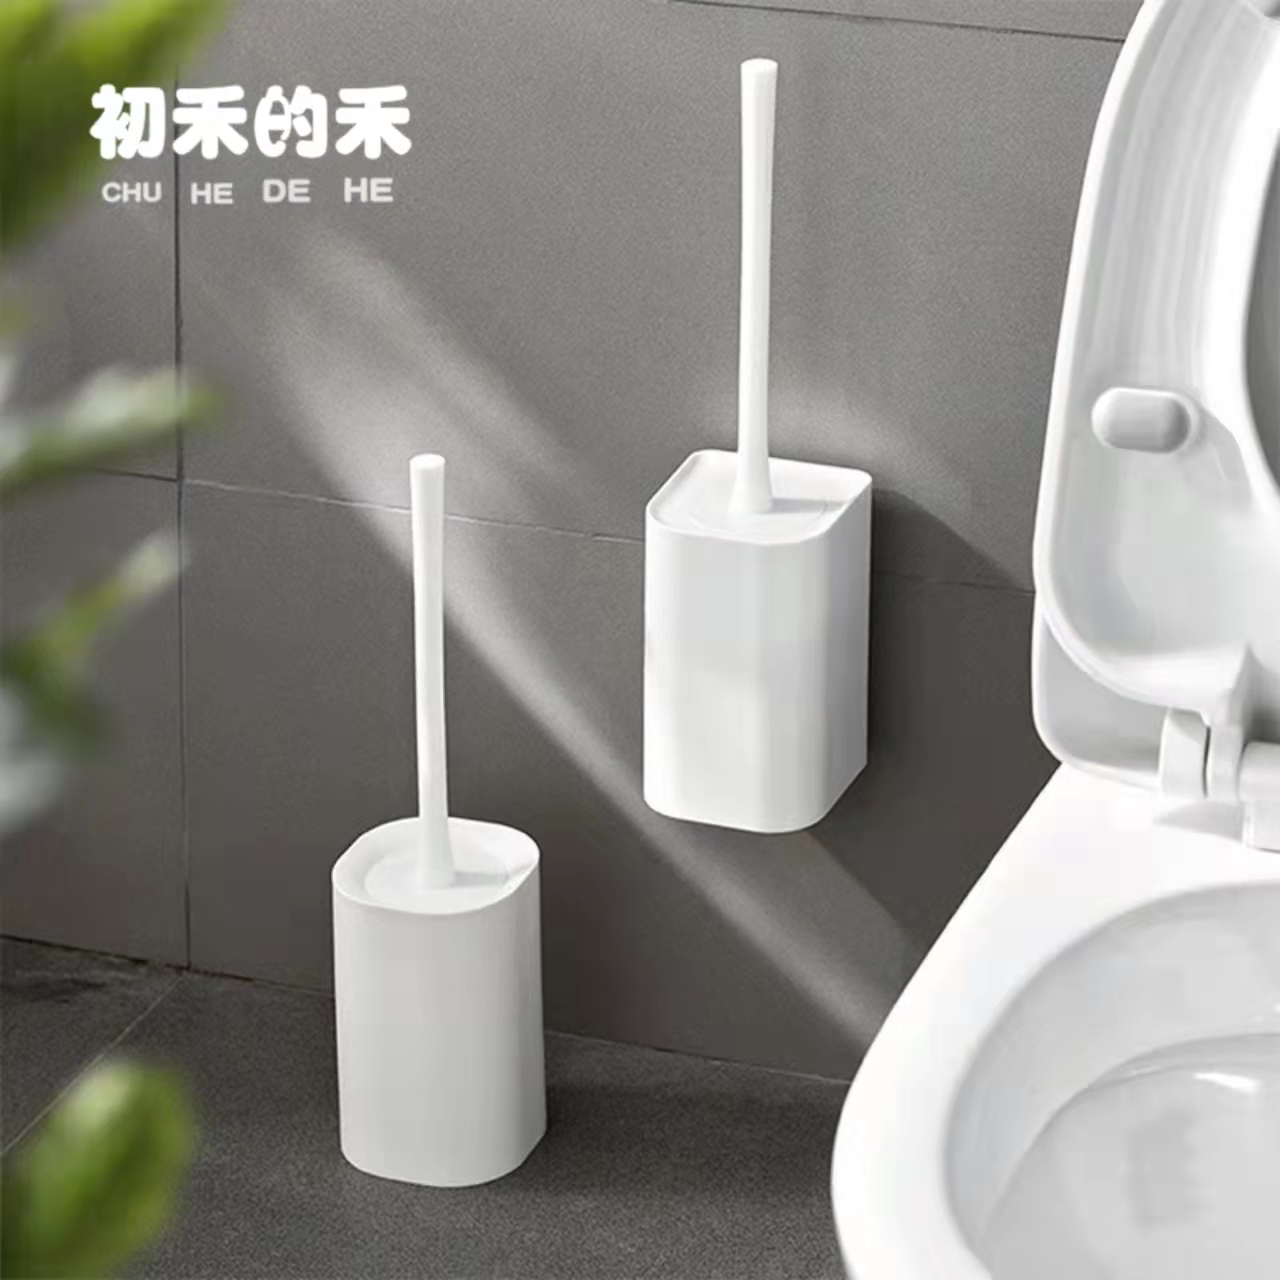 套装壁挂式马桶刷日本免打孔上墙家用卫生间厕所硅胶新款清洁刷子